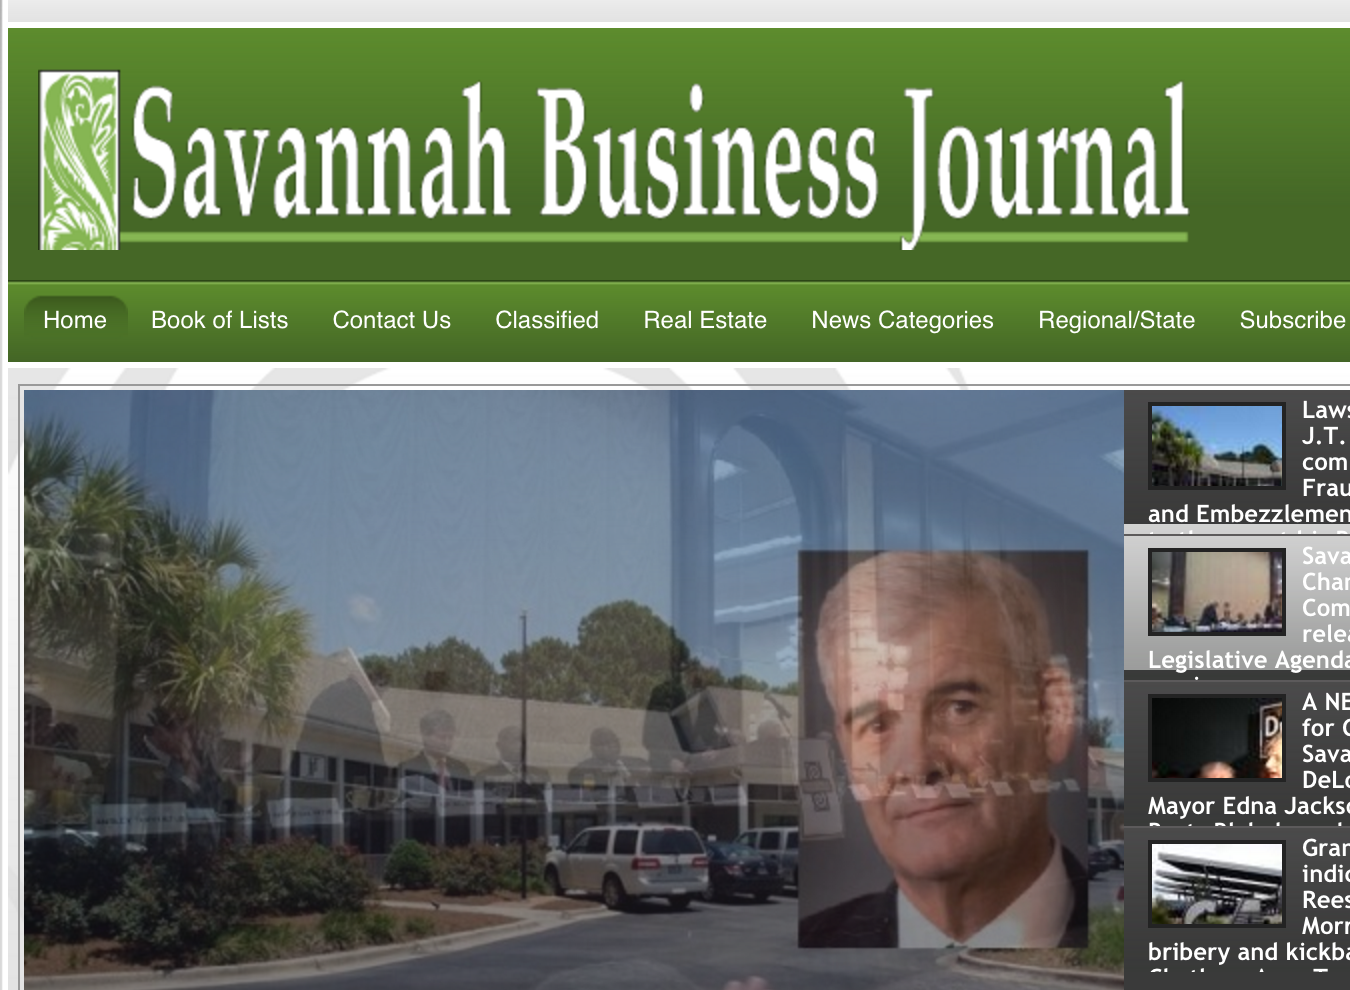 Sav. Business Journal